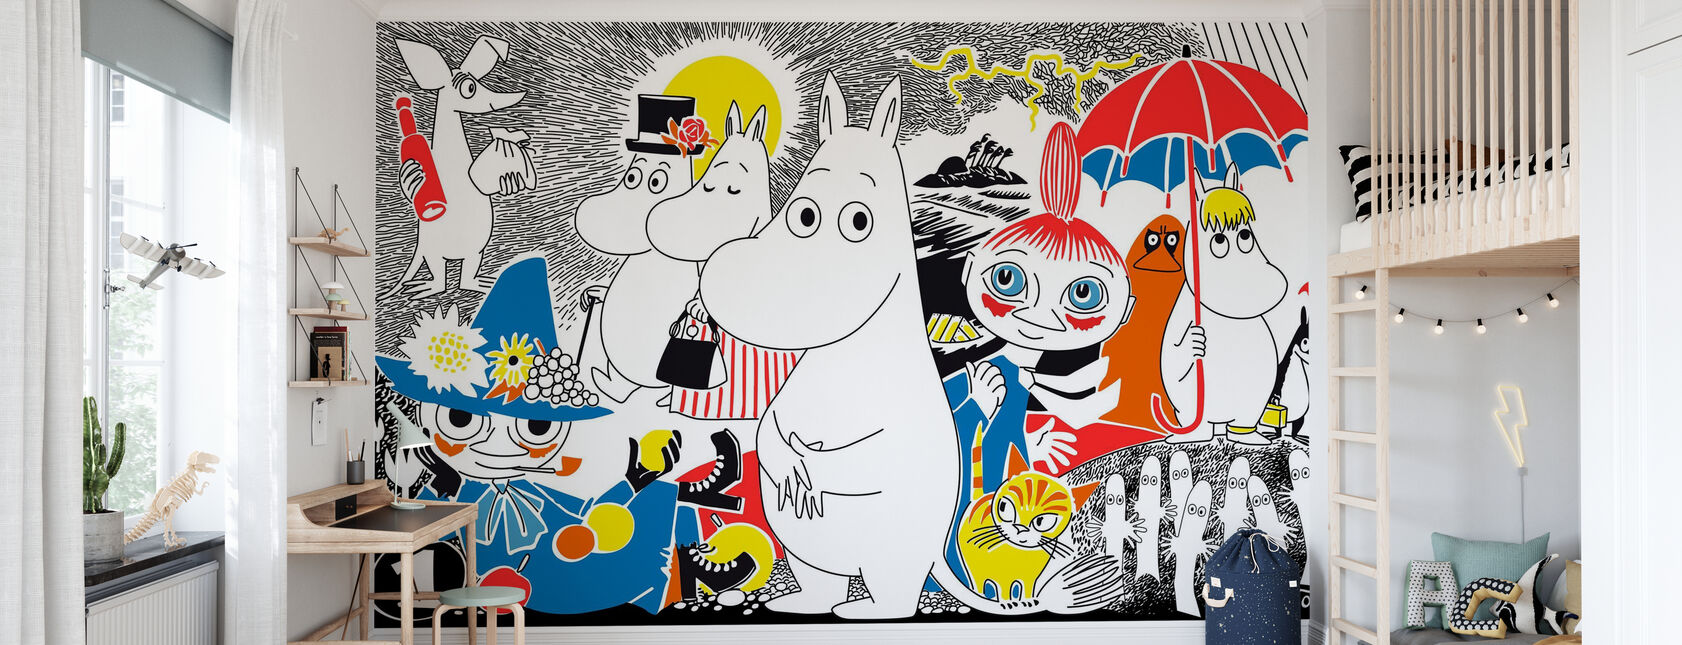 Moomin - BD 1 - Papier peint - Chambre des enfants